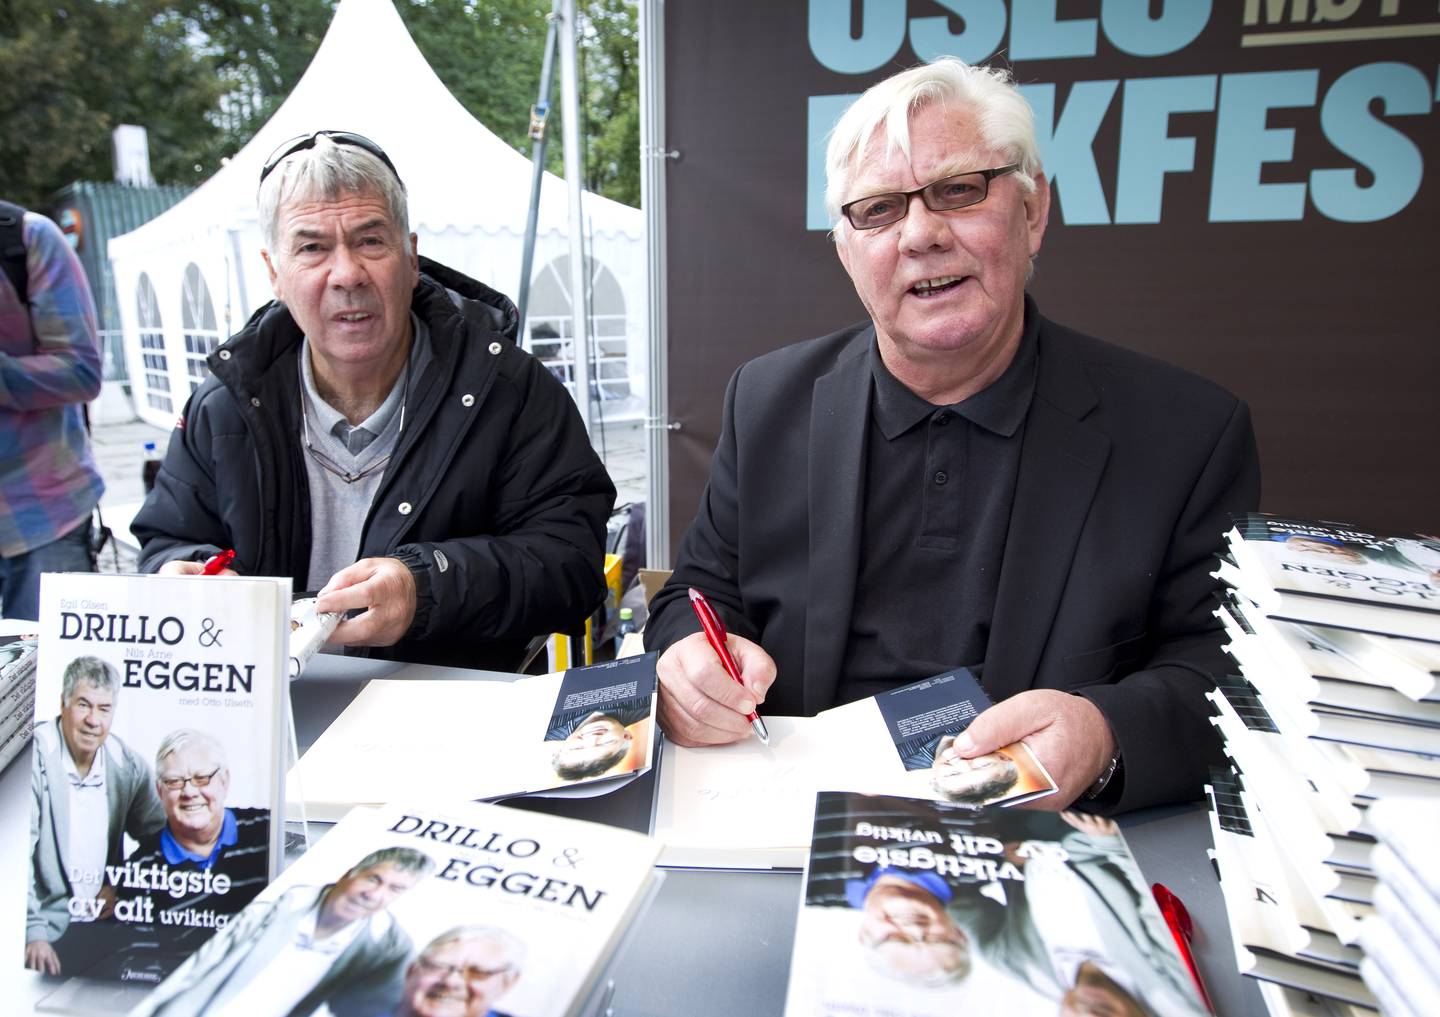 Nils Arne Eggen og Egil Olsen signerte boka si "Drillo og Eggen" under lanseringen i 2010.